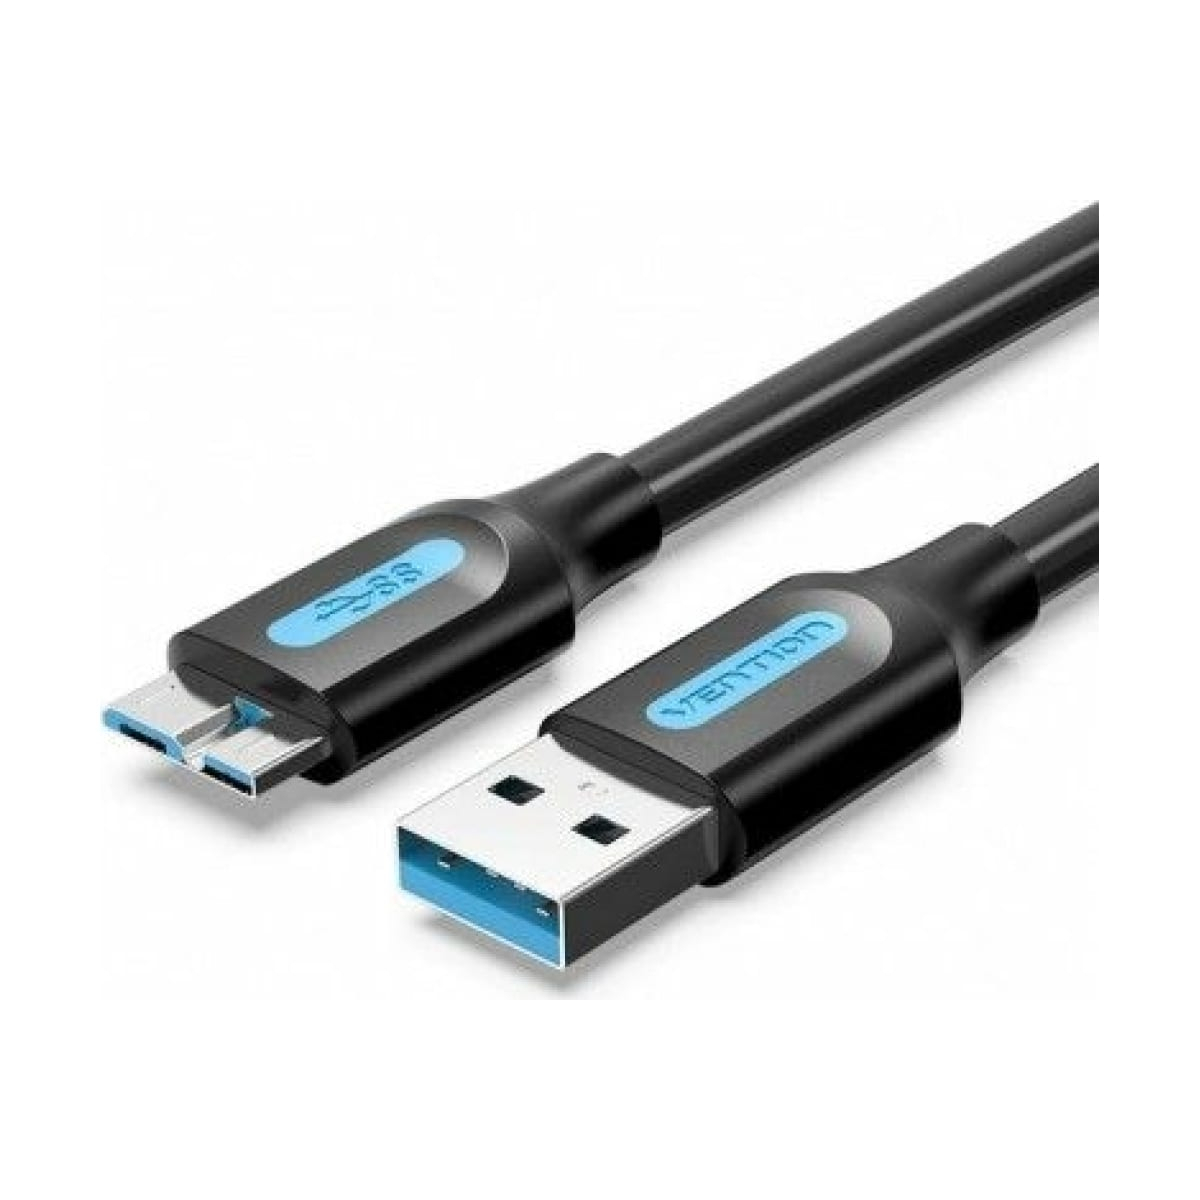 Кабель Vention USB 3.0 AM/micro B - 1м. (COPBF) кабель для samsung galaxy tab для зарядки и передачи данных широкий разъем 1м note 10 1 p7500 p7320 p7300 p6800 p5100 p3100 p1000